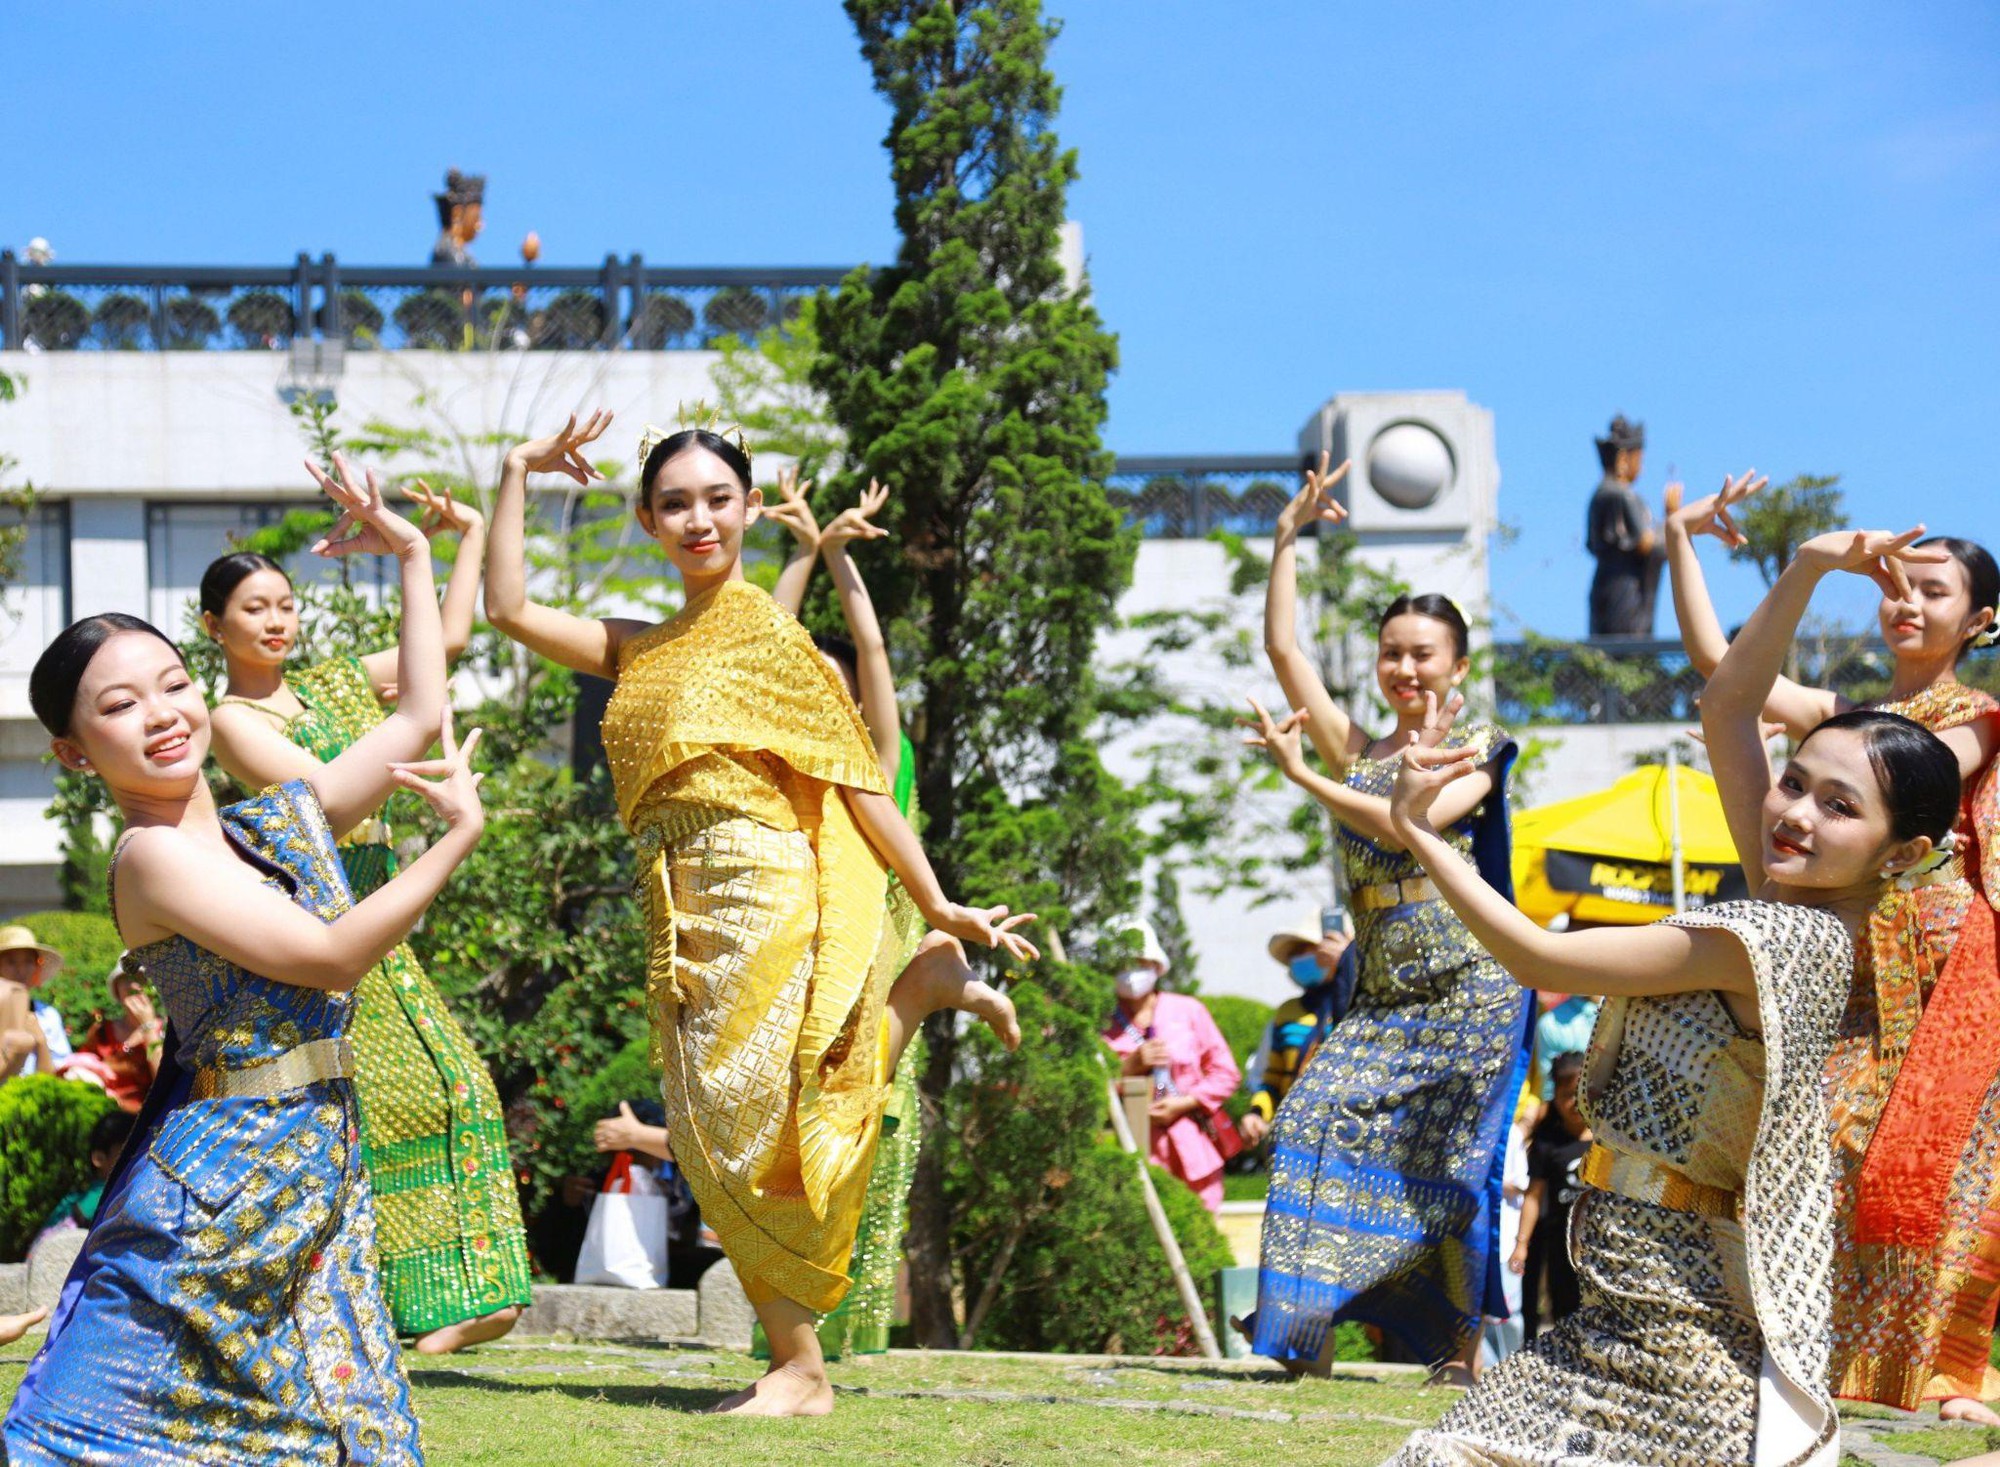 Tây Ninh vào mùa hành hương với loạt lễ hội lớn tại núi Bà Đen và Toà Thánh - Ảnh 2.